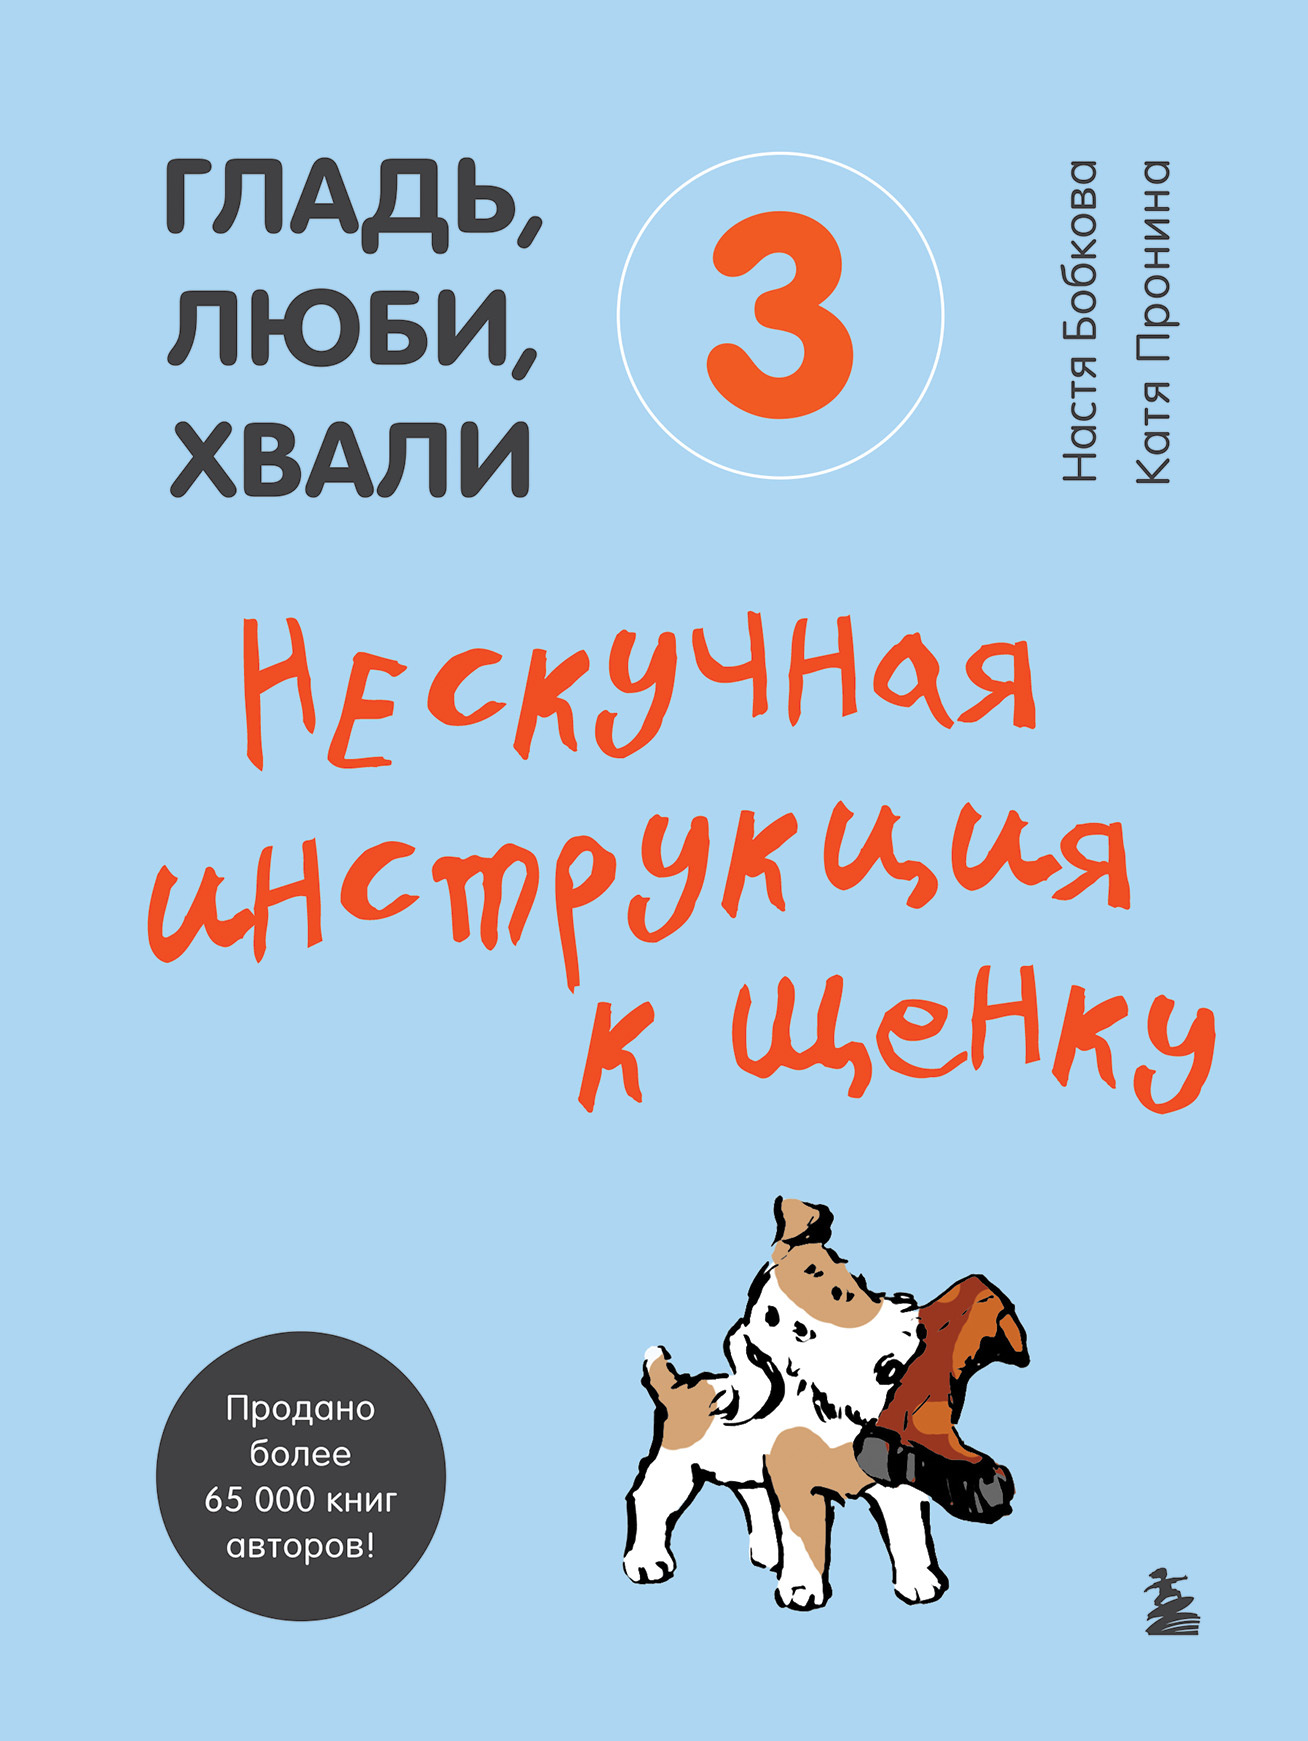 Гладь, люби, хвали 3: нескучная инструкция к щенку - Анастасия Михайловна Бобкова